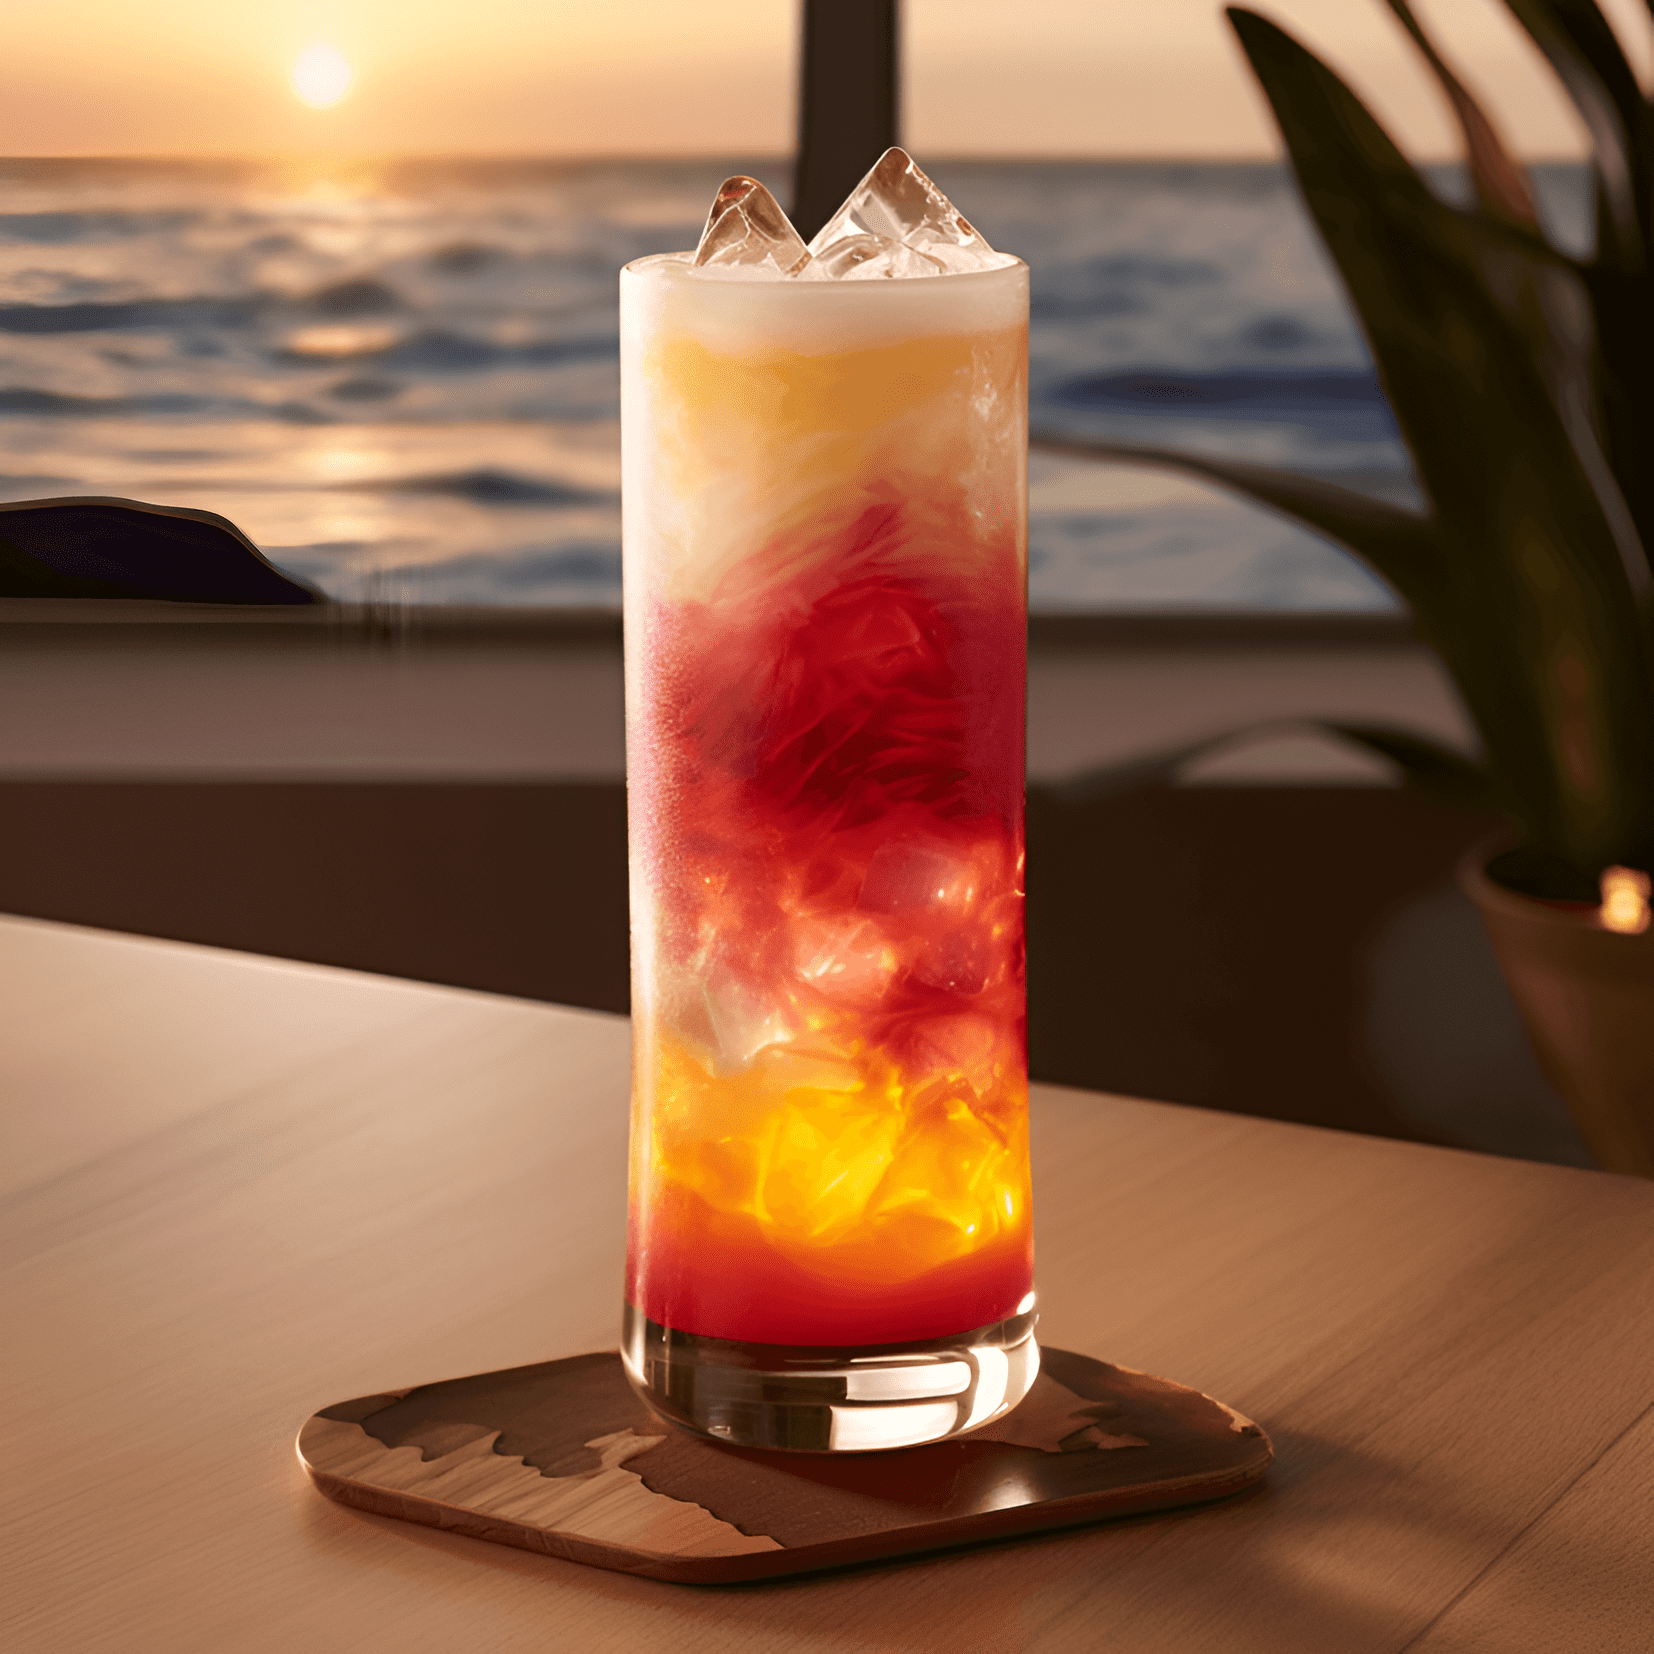 Malibu Cóctel Receta - El cóctel Malibu es una bebida dulce, afrutada y refrescante con un toque de coco. Tiene un sabor ligero y tropical, lo que lo hace perfecto para el clima cálido y para beber en la playa.